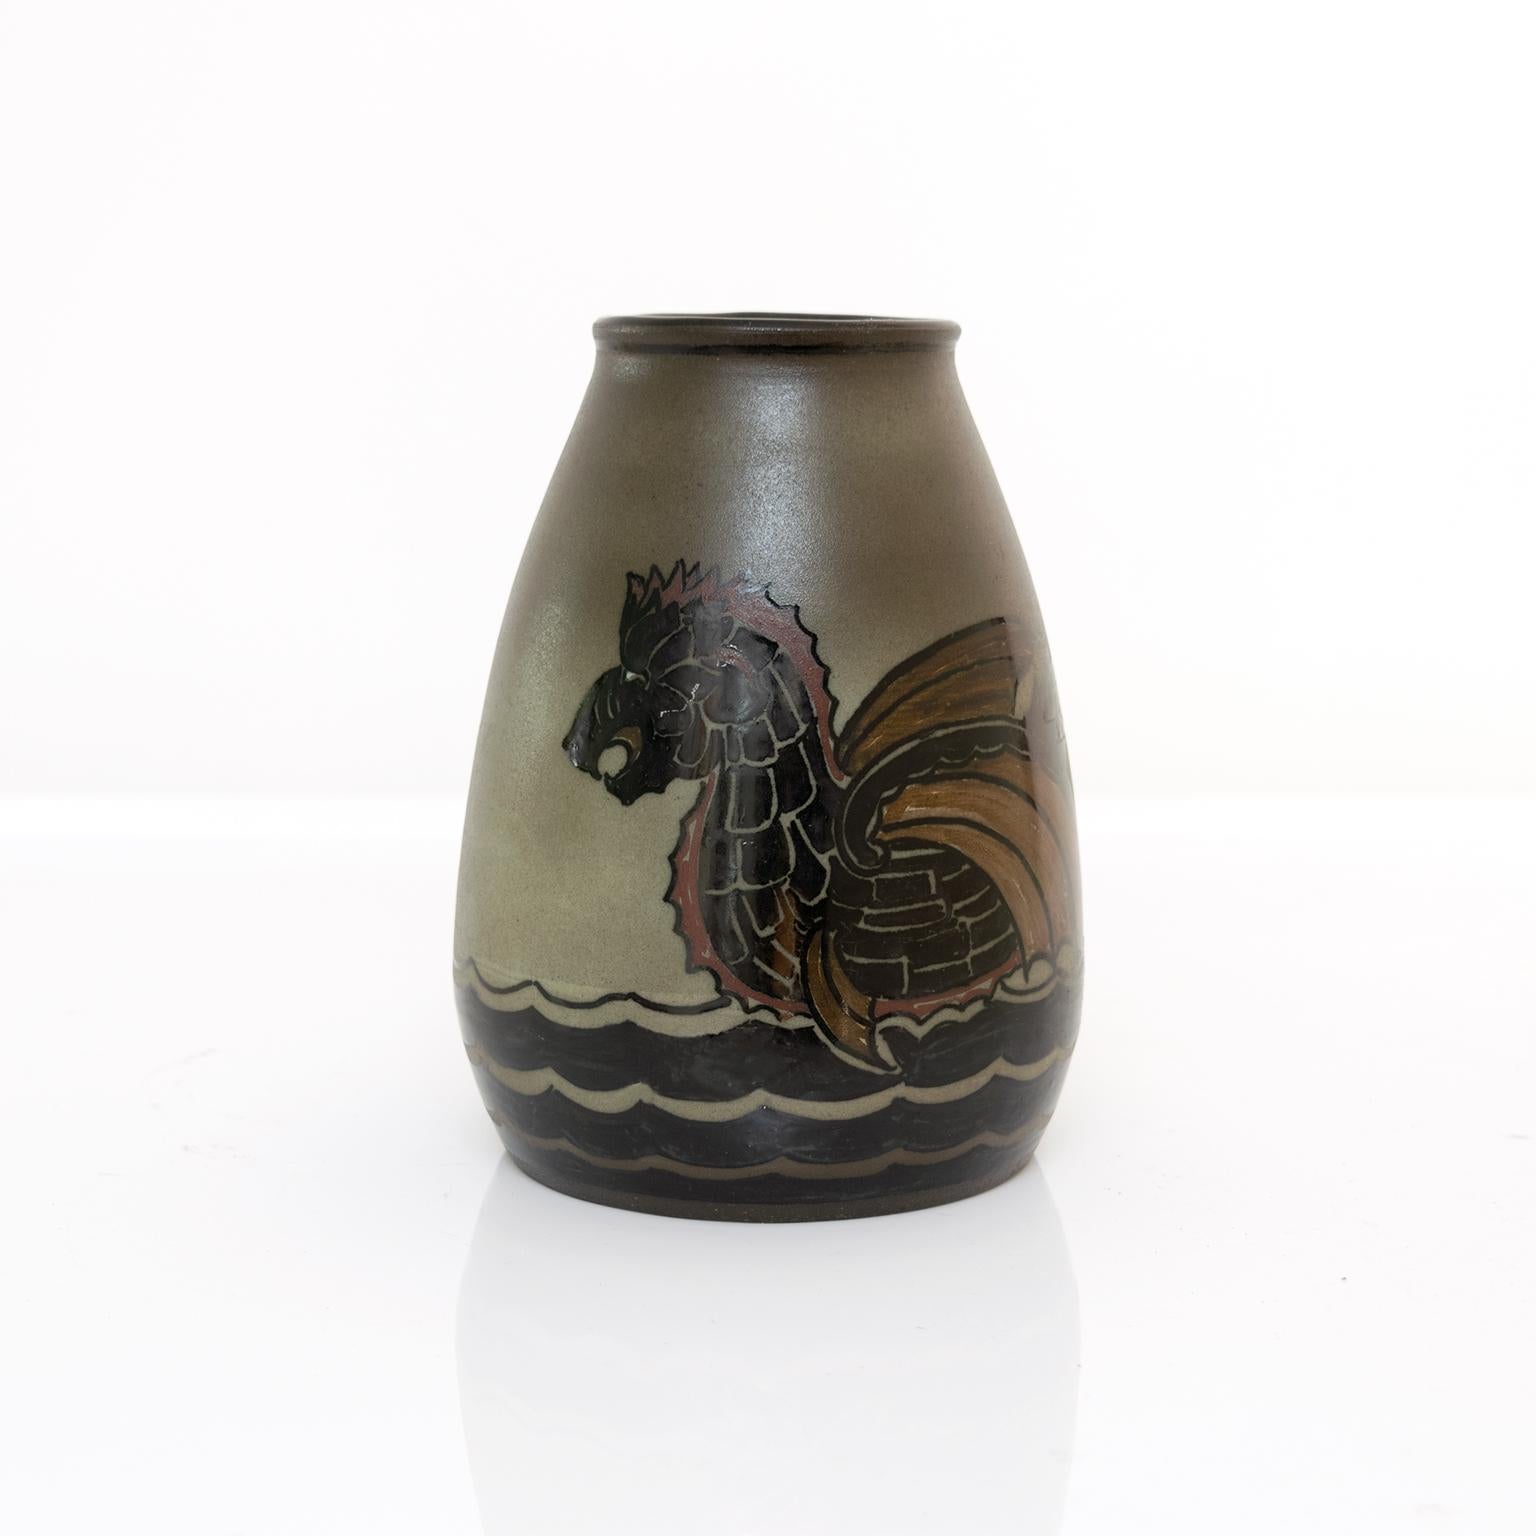 Einzigartige skandinavisch-moderne handgedrehte und bemalte Keramikvase von Josef Ekberg für Gustavsberg, Schweden. Die Vase zeigt ein Boot in Form eines Schlangenkörpers auf dem Meer. Um 1930.

Maße: Höhe: 7,75